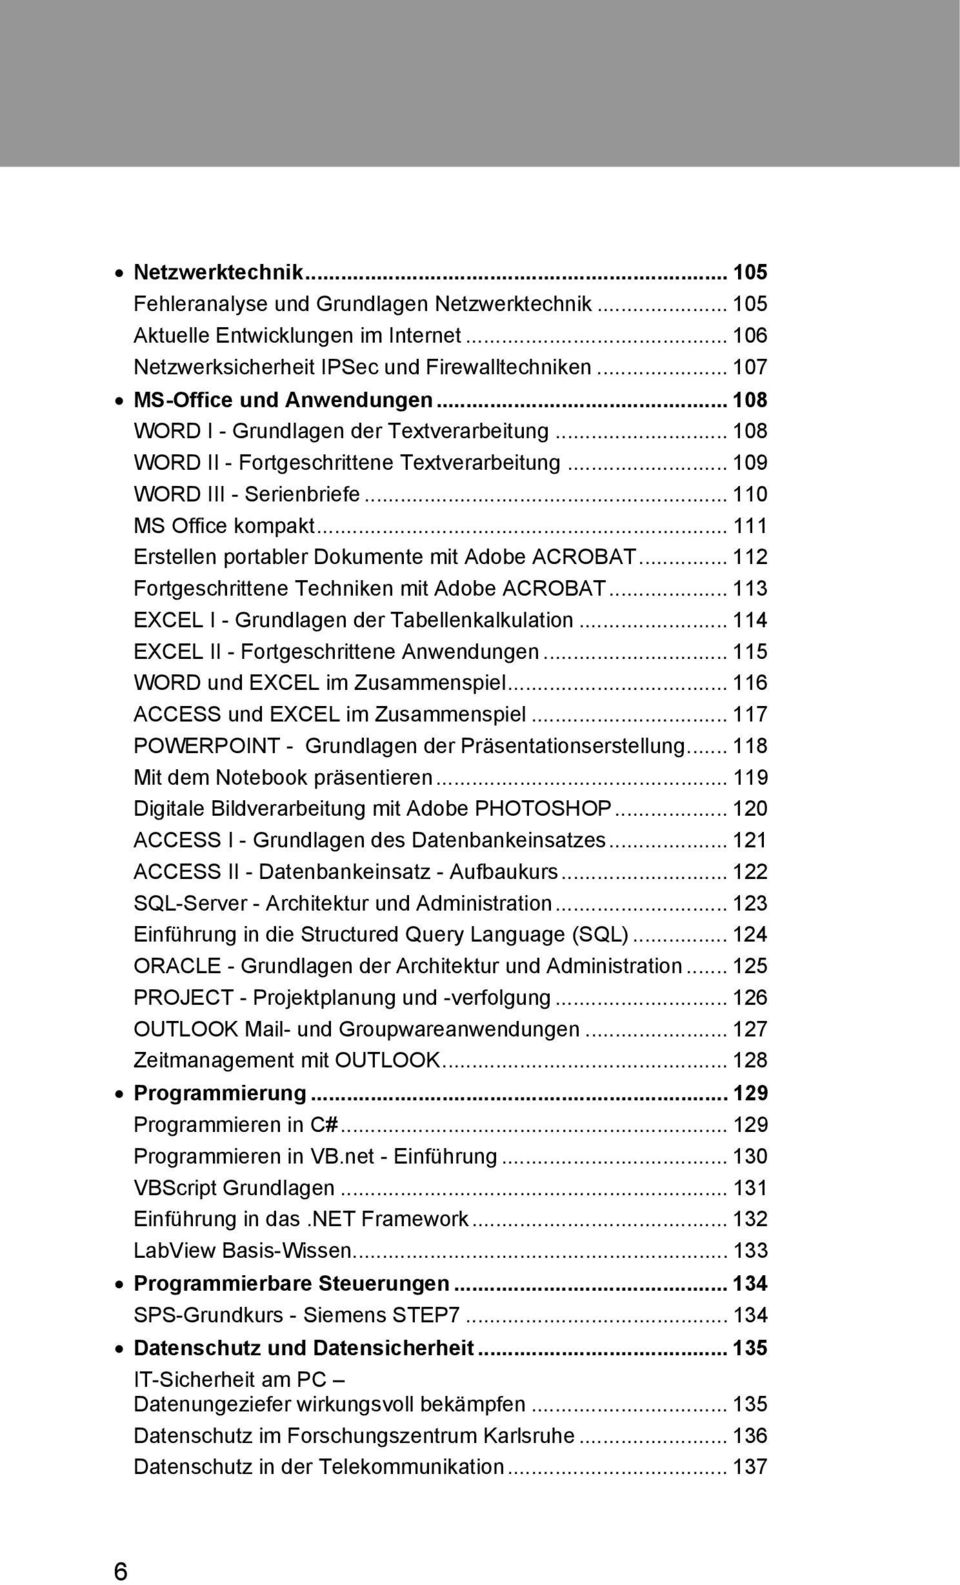 .. 111 Erstellen portabler Dokumente mit Adobe ACROBAT... 112 Fortgeschrittene Techniken mit Adobe ACROBAT... 113 EXCEL I - Grundlagen der Tabellenkalkulation.